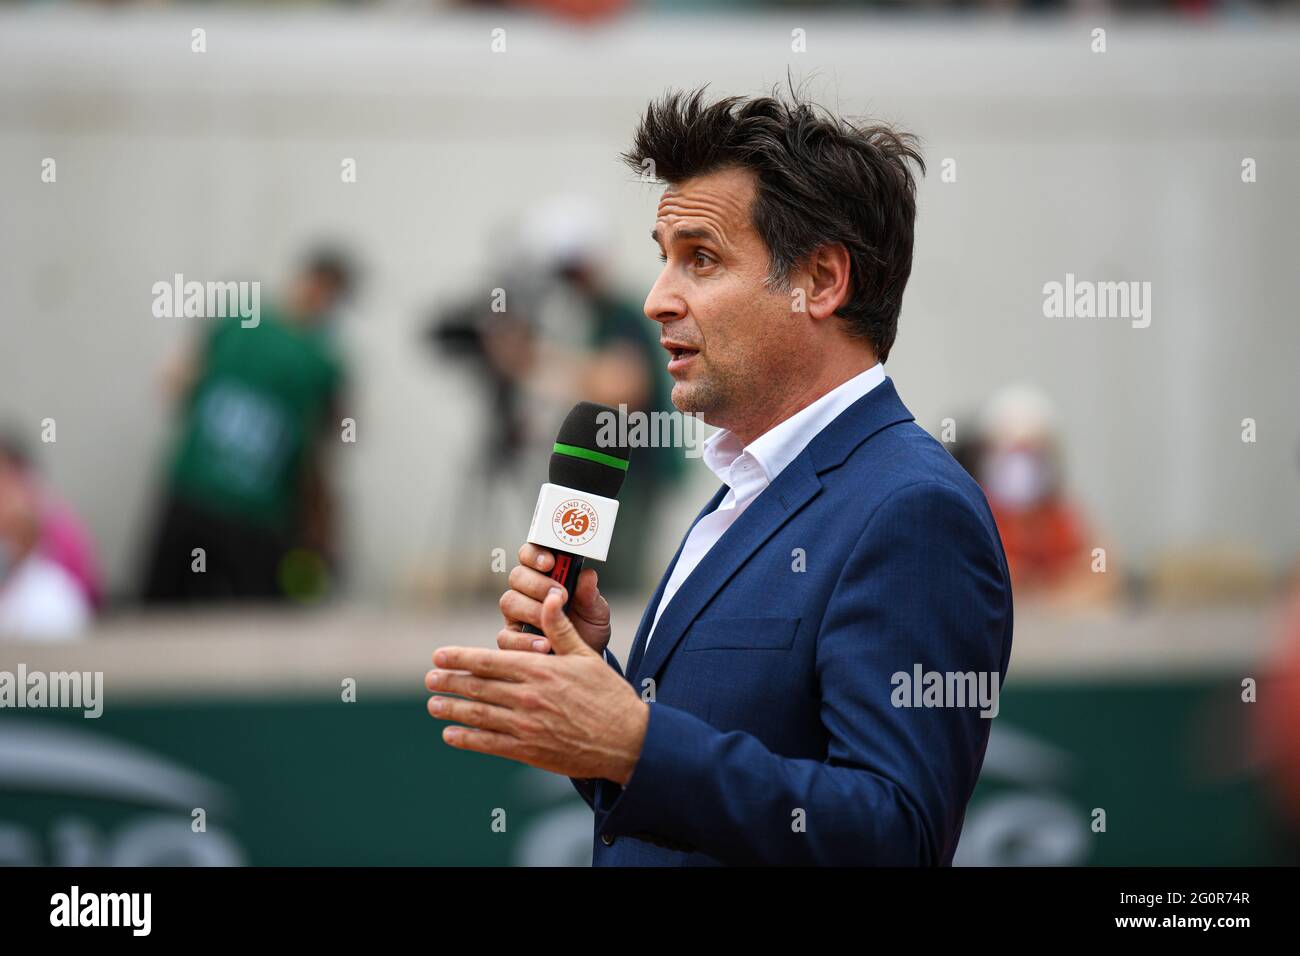 Fabrice Santoro interview lors de la deuxième manche au tournoi de tennis  Roland-Garros 2021, Grand Chelem le 2 juin 2021 au stade Roland-Garros à  Paris, France - photo Victor Joly / DPPI